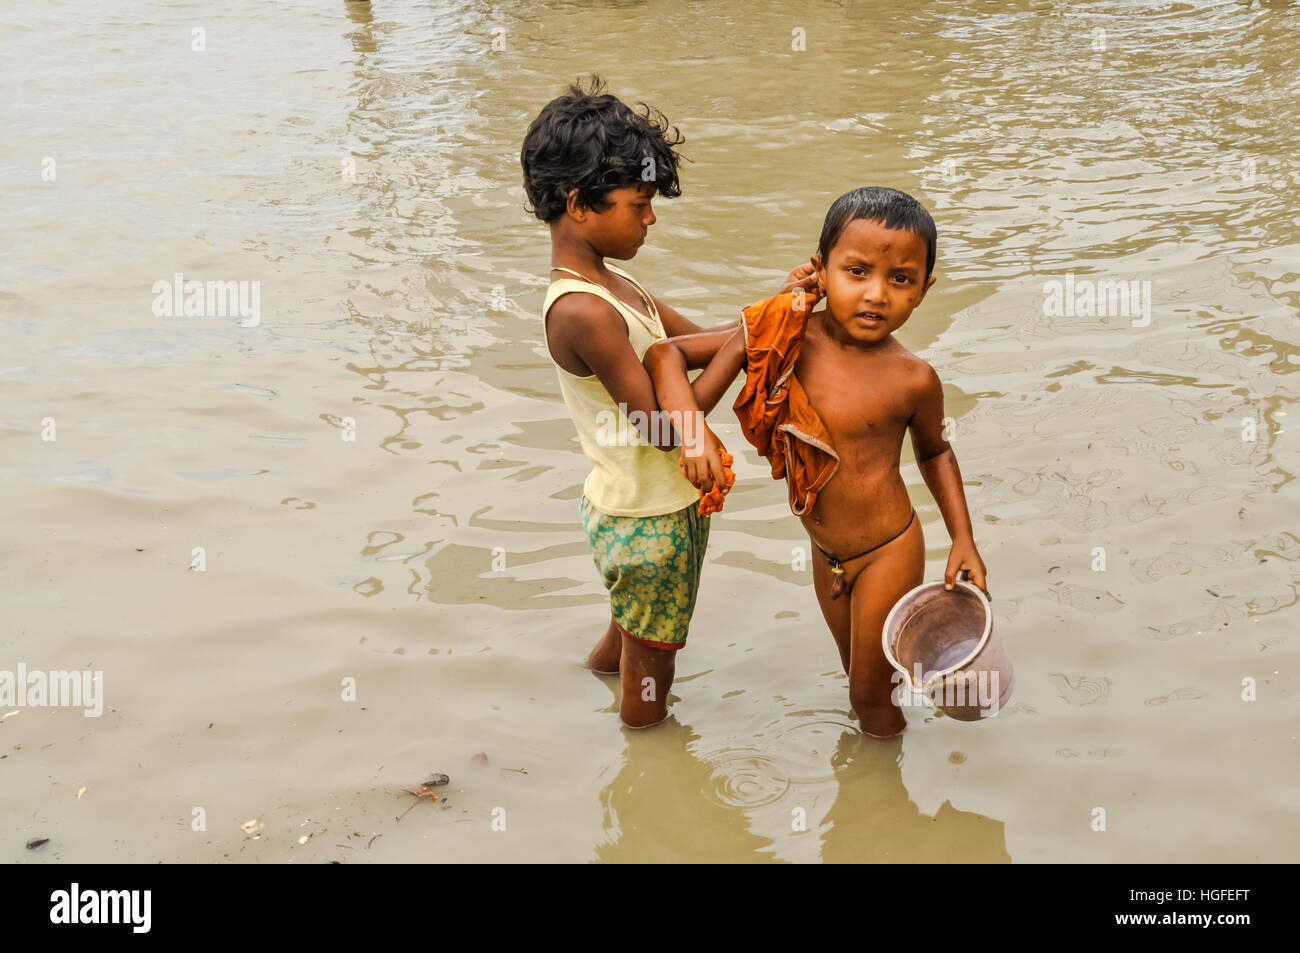 Негритята купаются. Купание детей Африка. Индийские дети купаются в реке. Купание мальчишек в Индии. Дети купаются в реке.